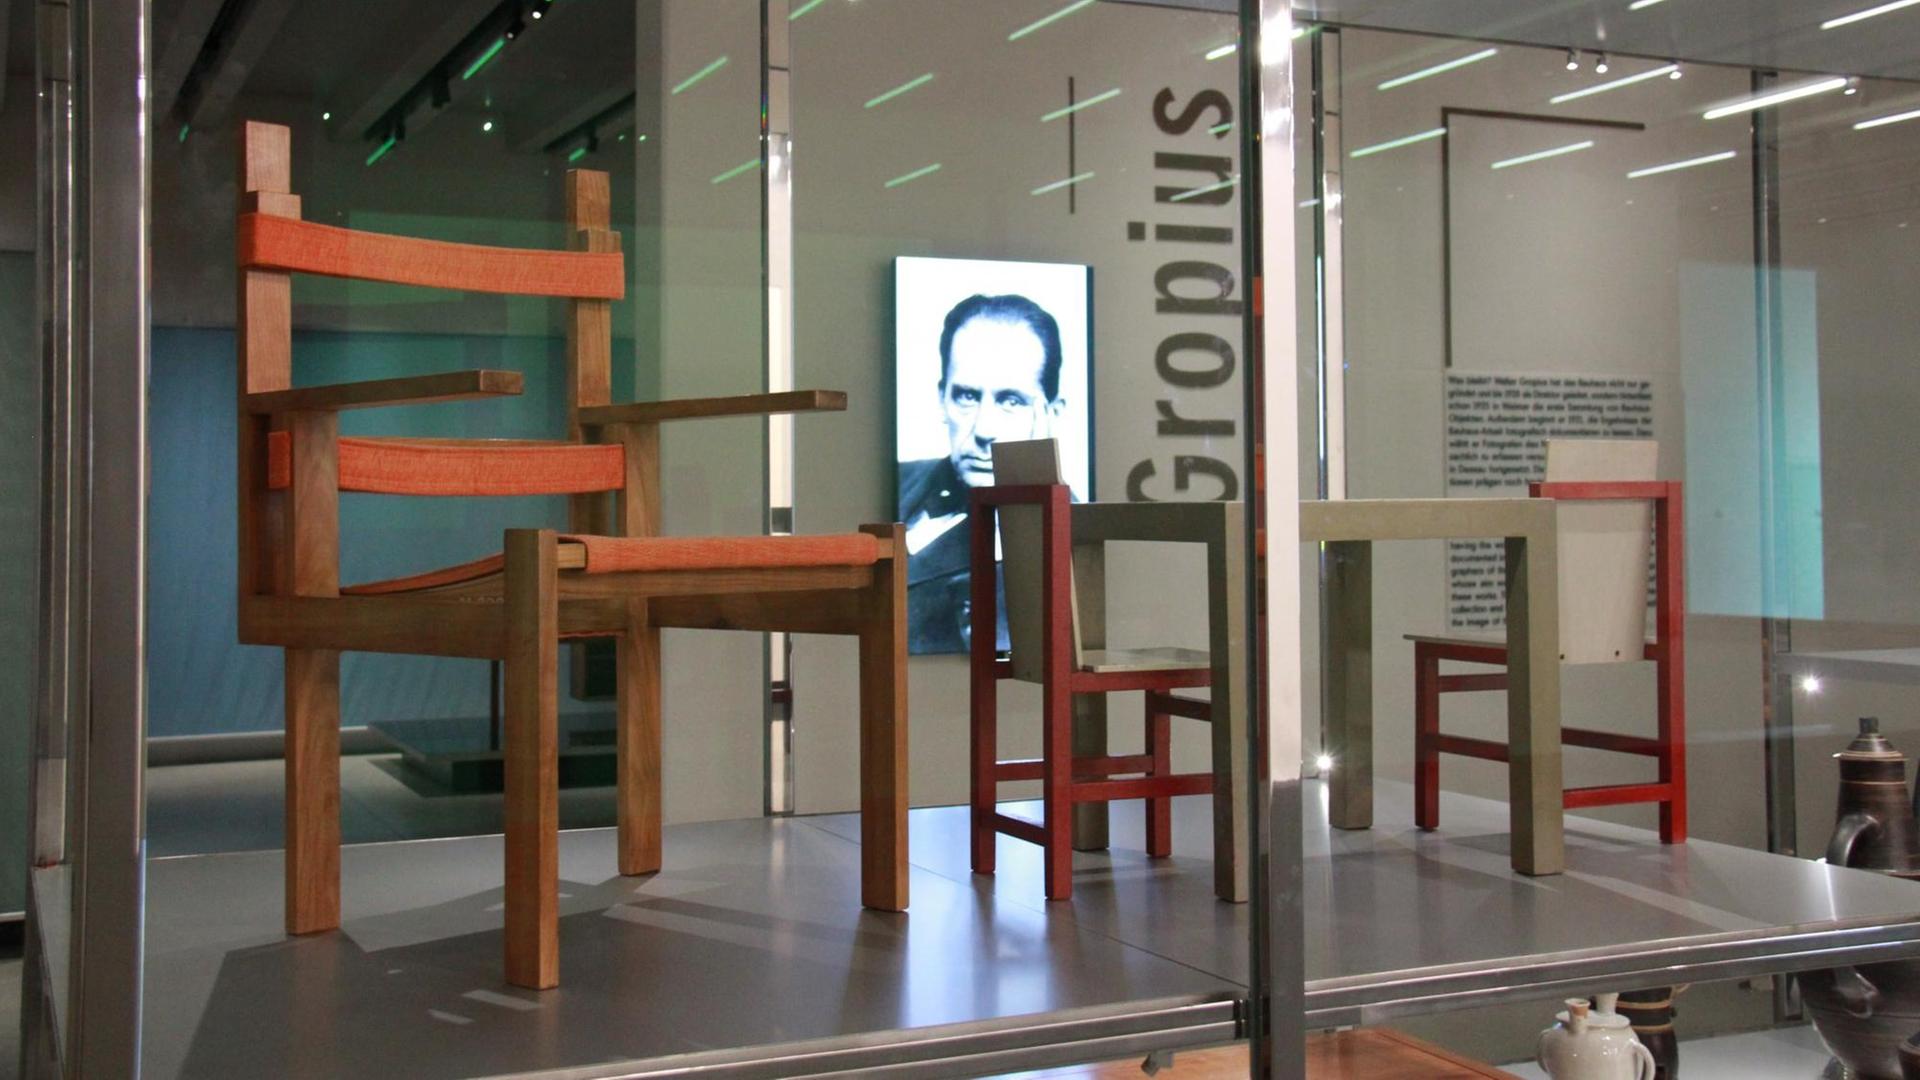 Blbick in die Dauerausstellung des neuen Bauhaus-Museums in Weimar: Stühle aus der Gropius-Sammlung